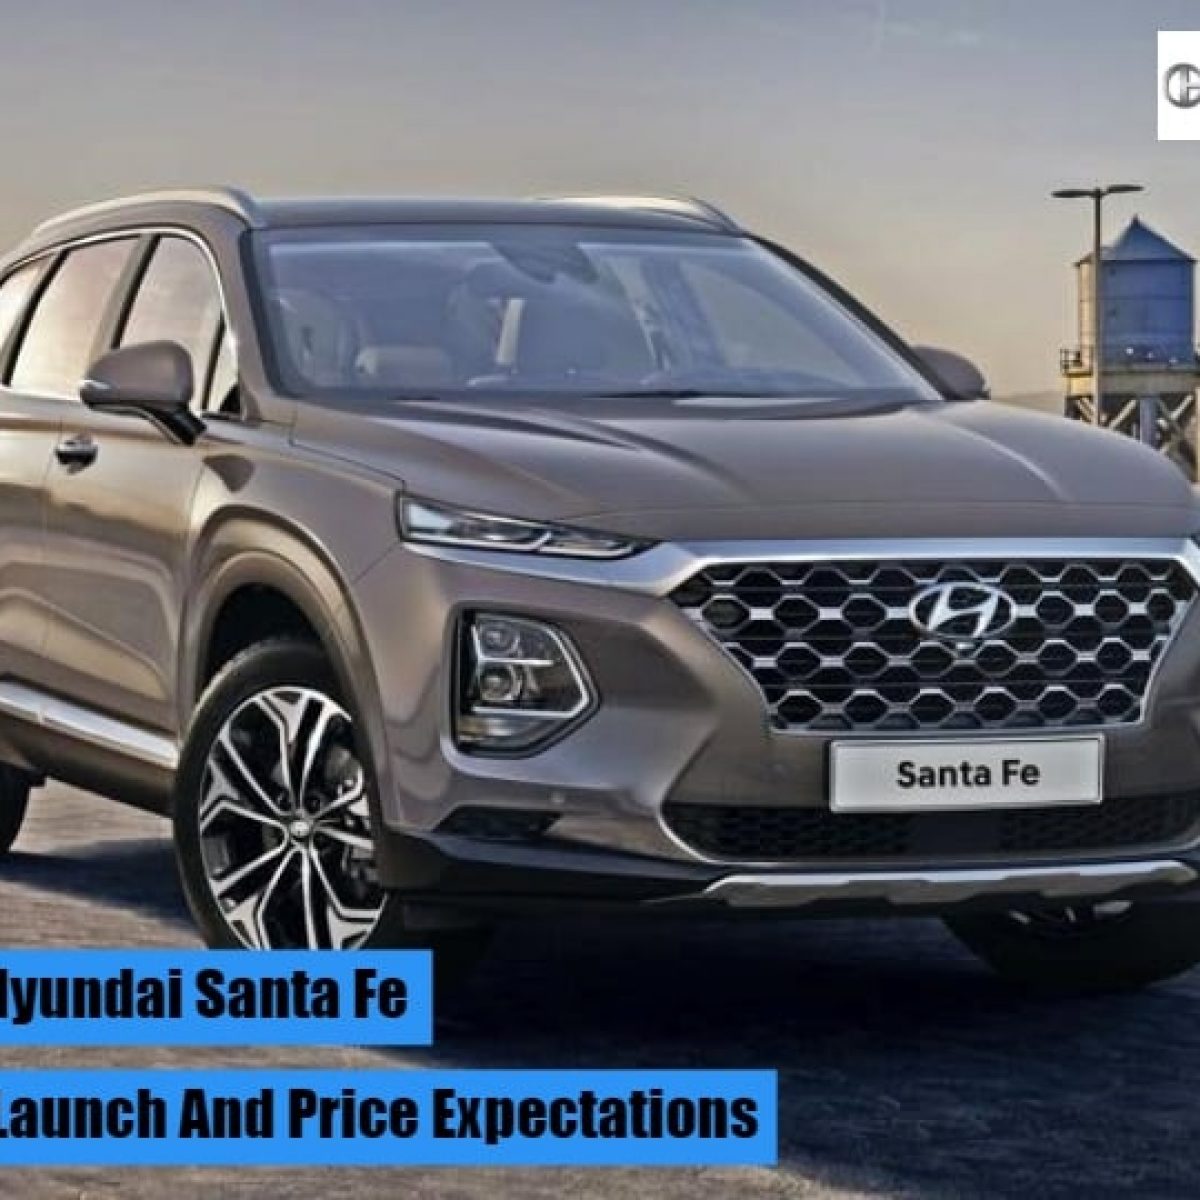 2019 Hyundai Santa Fe Price In India Launch Interior